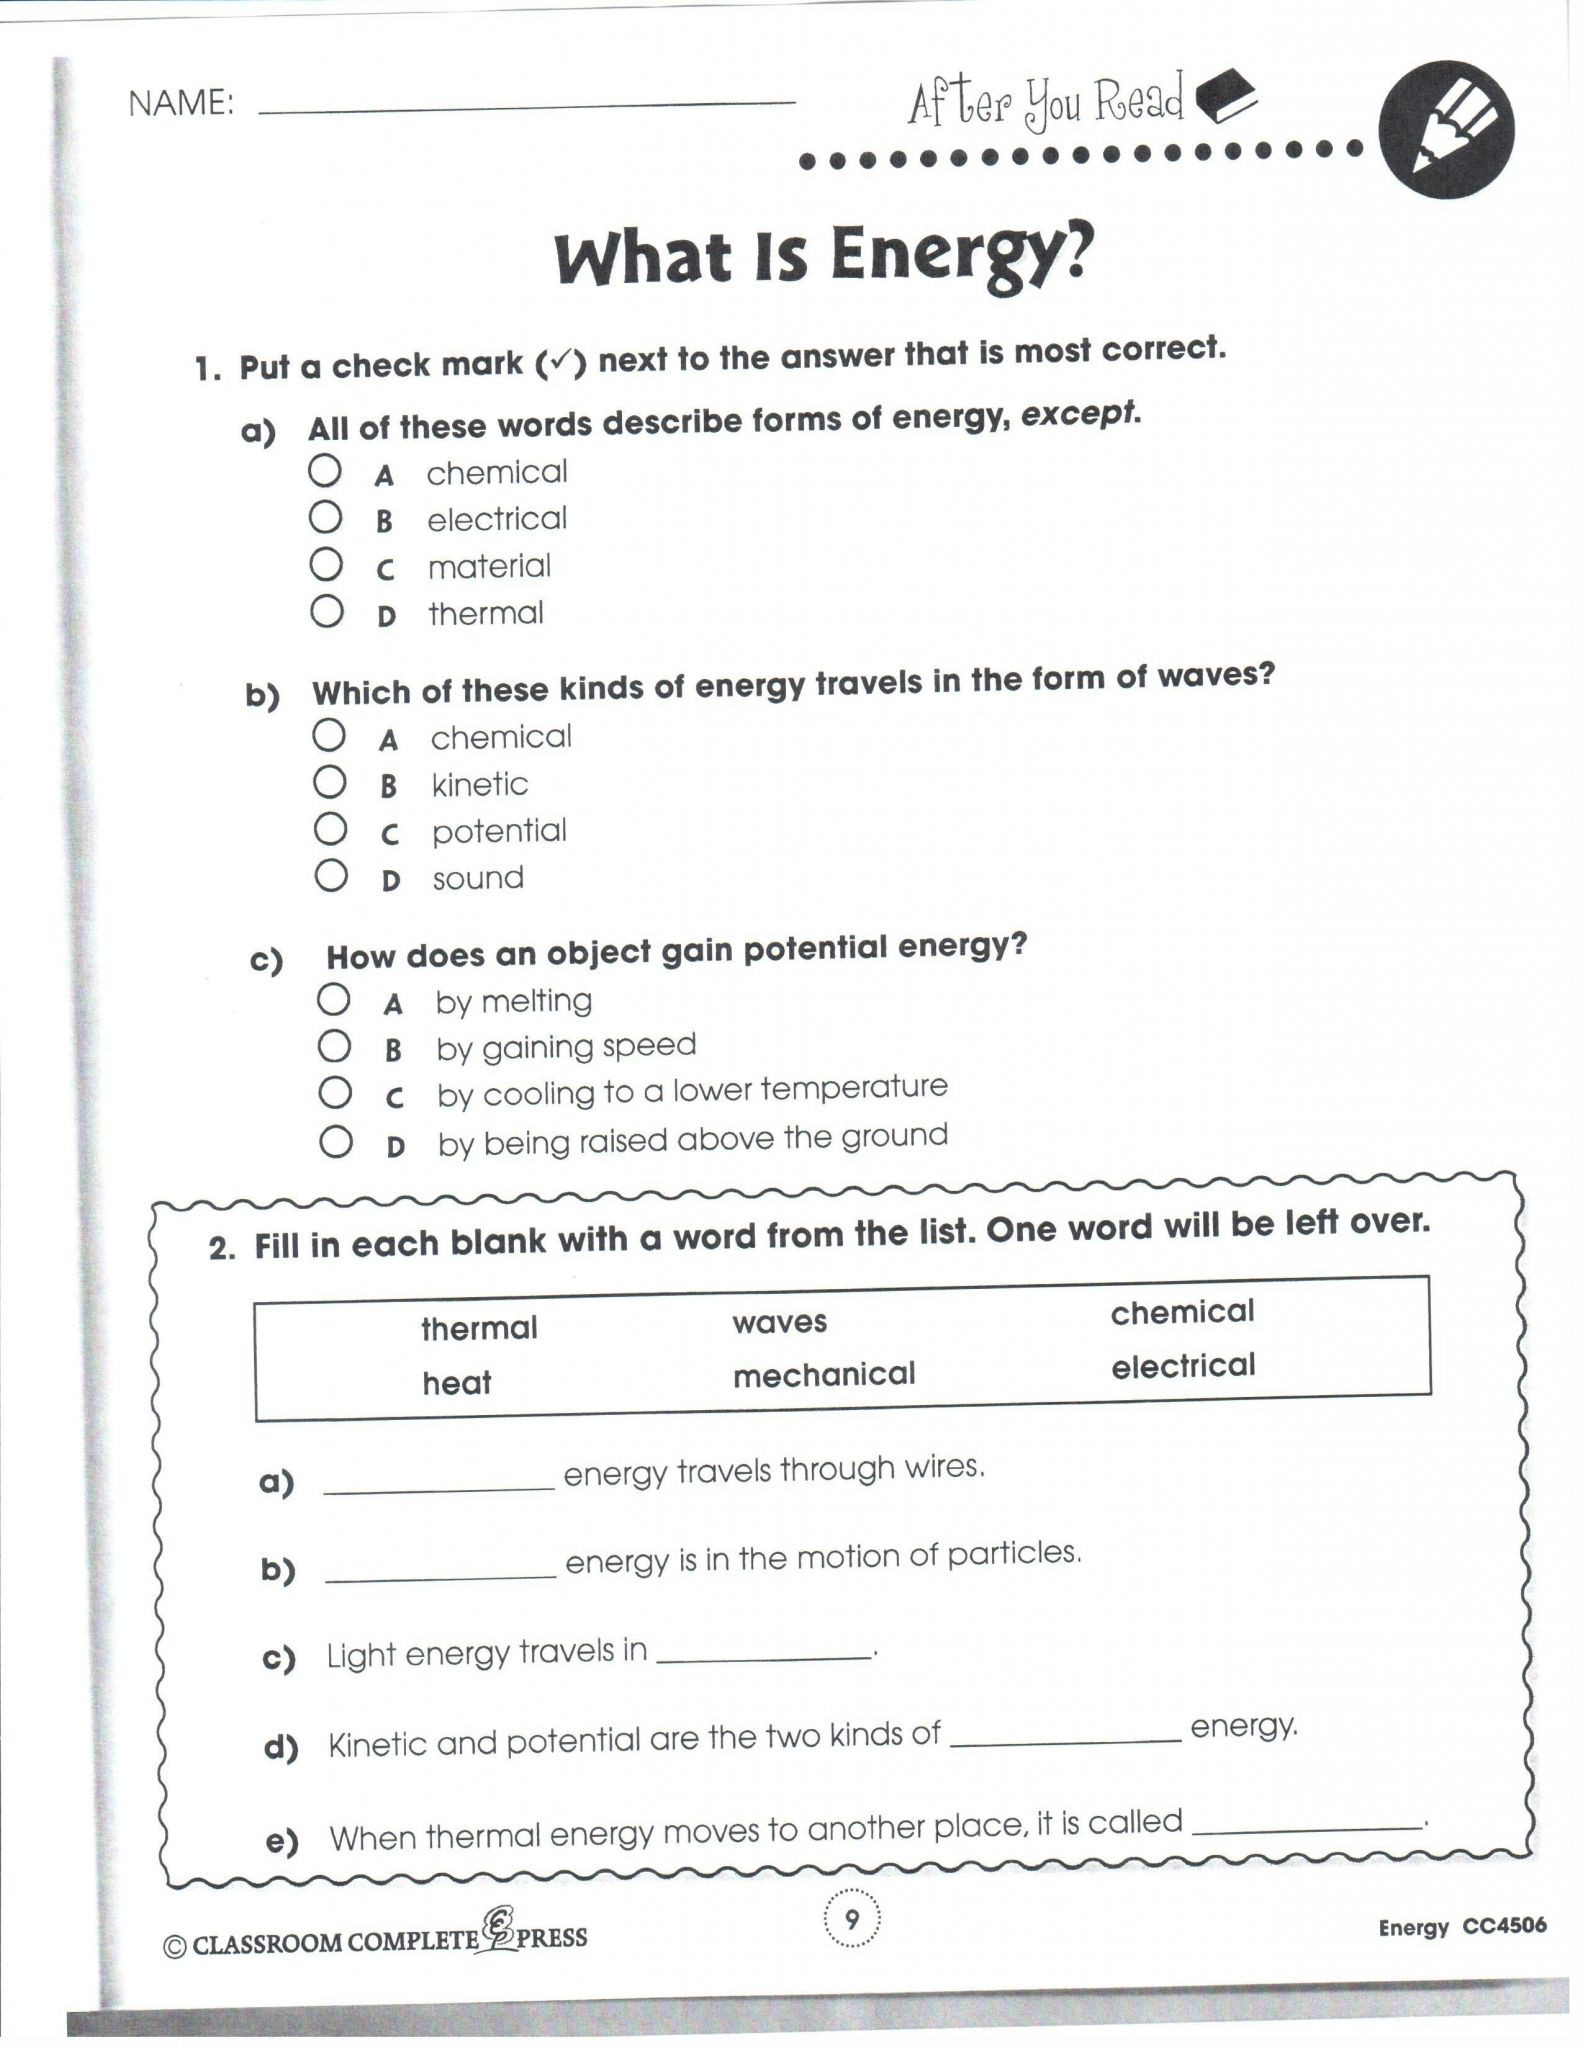 Potential Versus Kinetic Energy Worksheet 34 Kinetic and Potential Energy Worksheet Answers Key